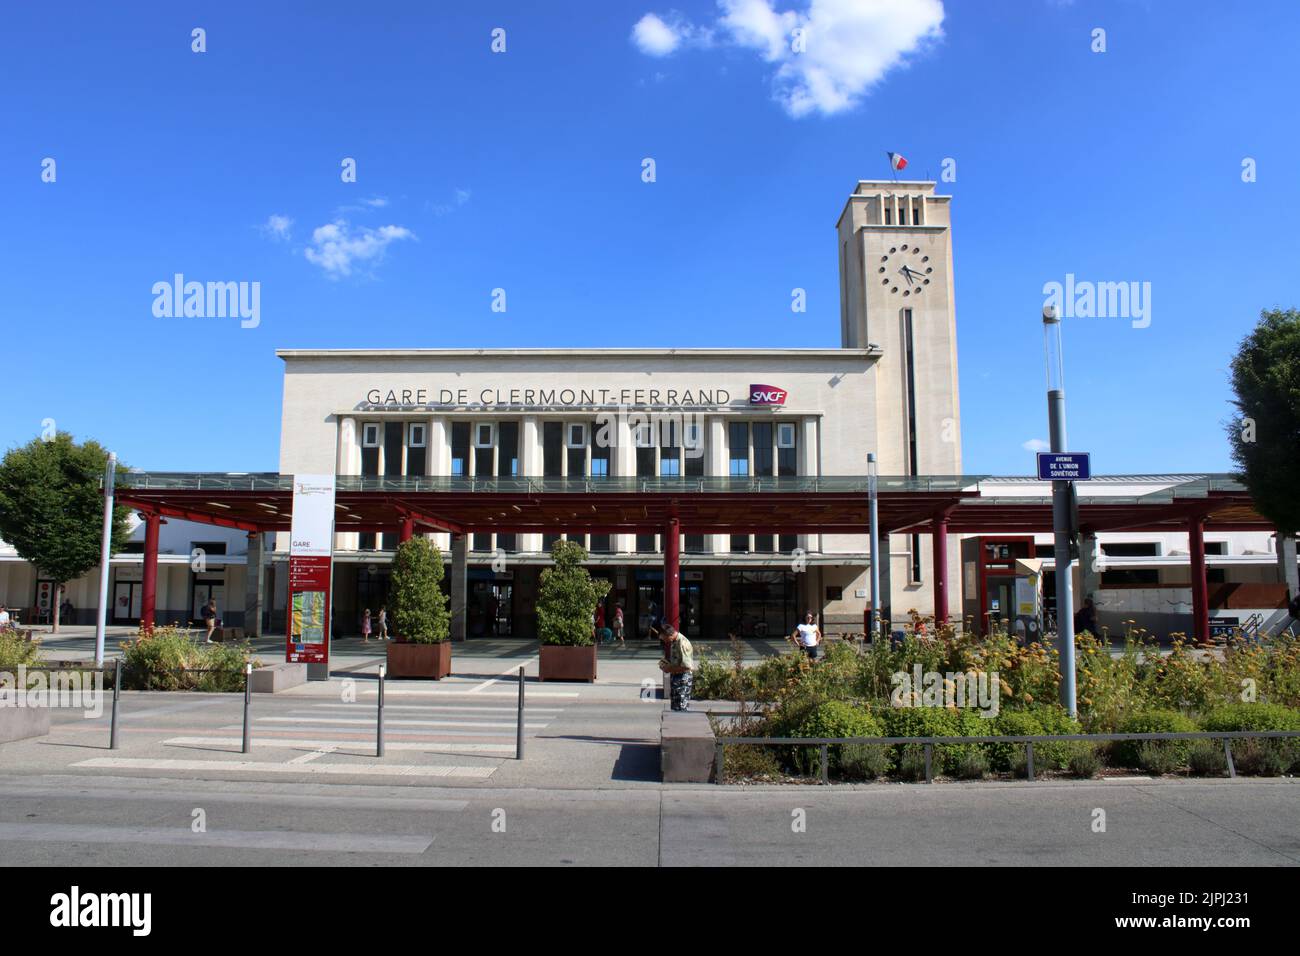 La gare de Clermont-Ferrand, récemment rénovée, est une ville située dans le centre de la France. Banque D'Images